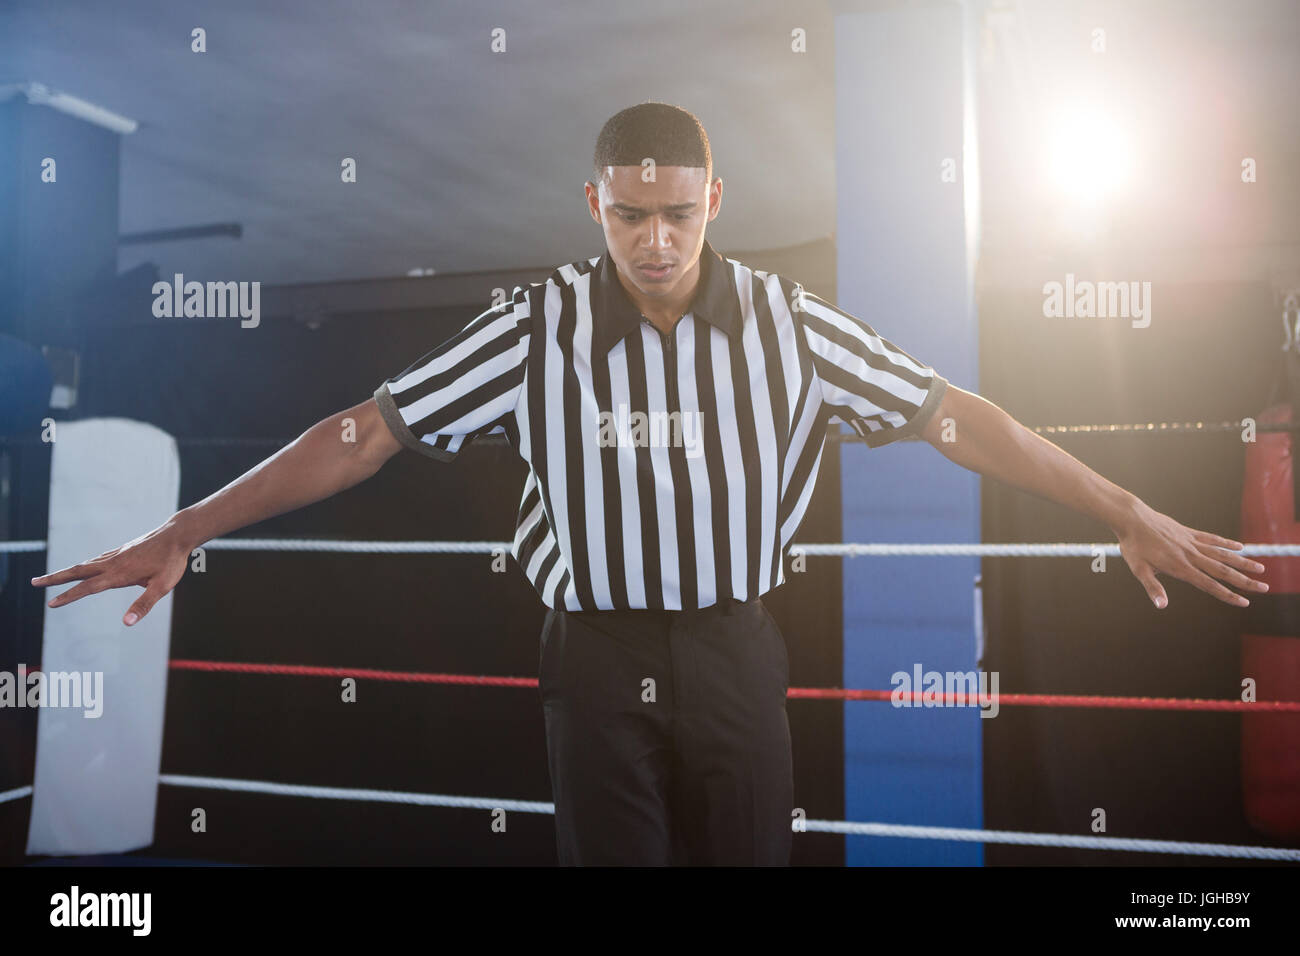 Arbitre mâle gesticulant avec bras tendus en ring de boxe Photo Stock -  Alamy